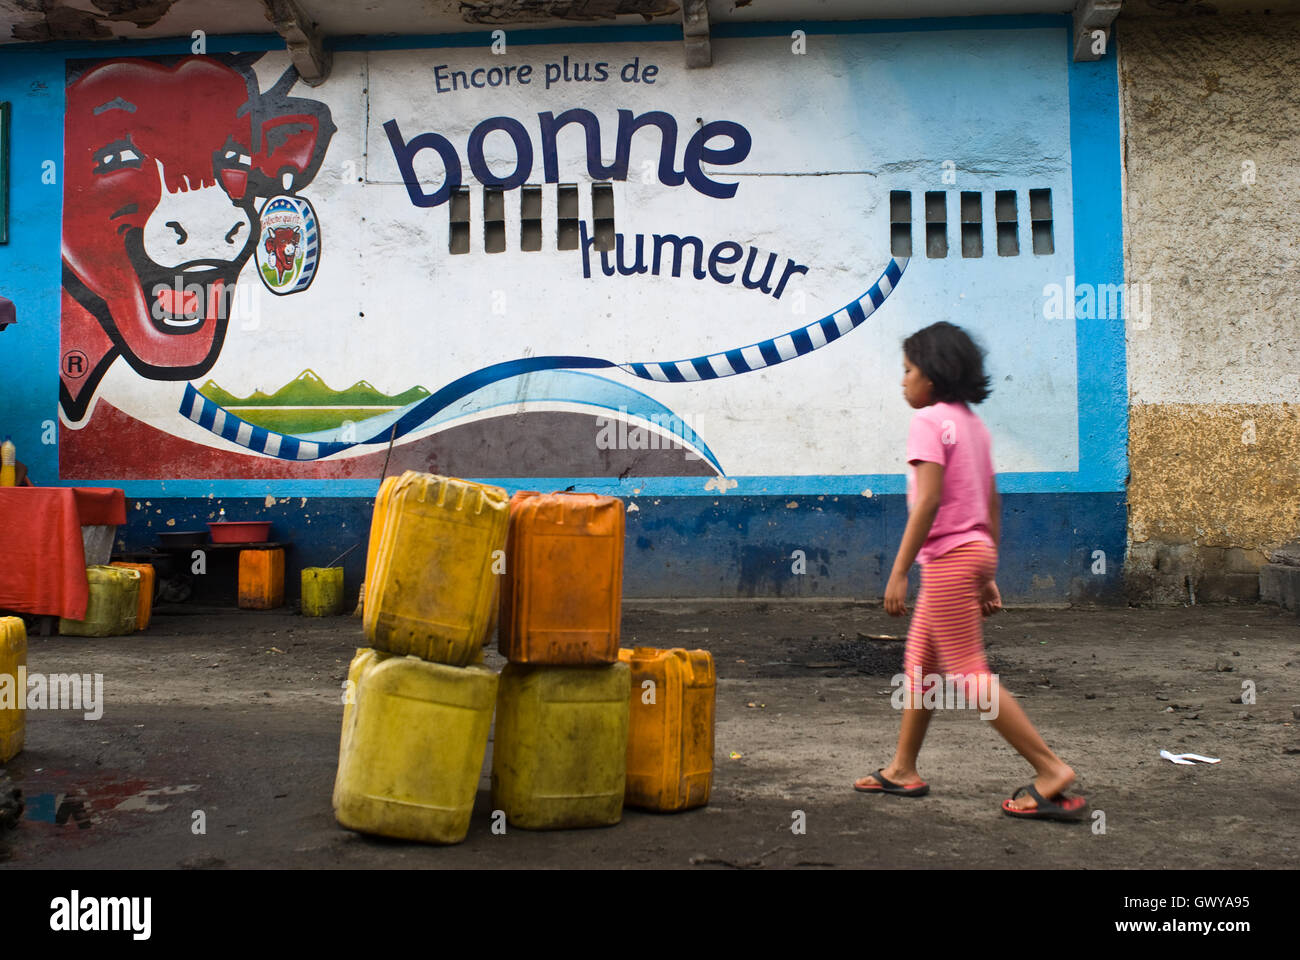 Wandbild anzeigen für einen berühmten französischen Käse ("La Vache Qui Rit", "Die lachende Kuh") (Madagaskar) Stockfoto